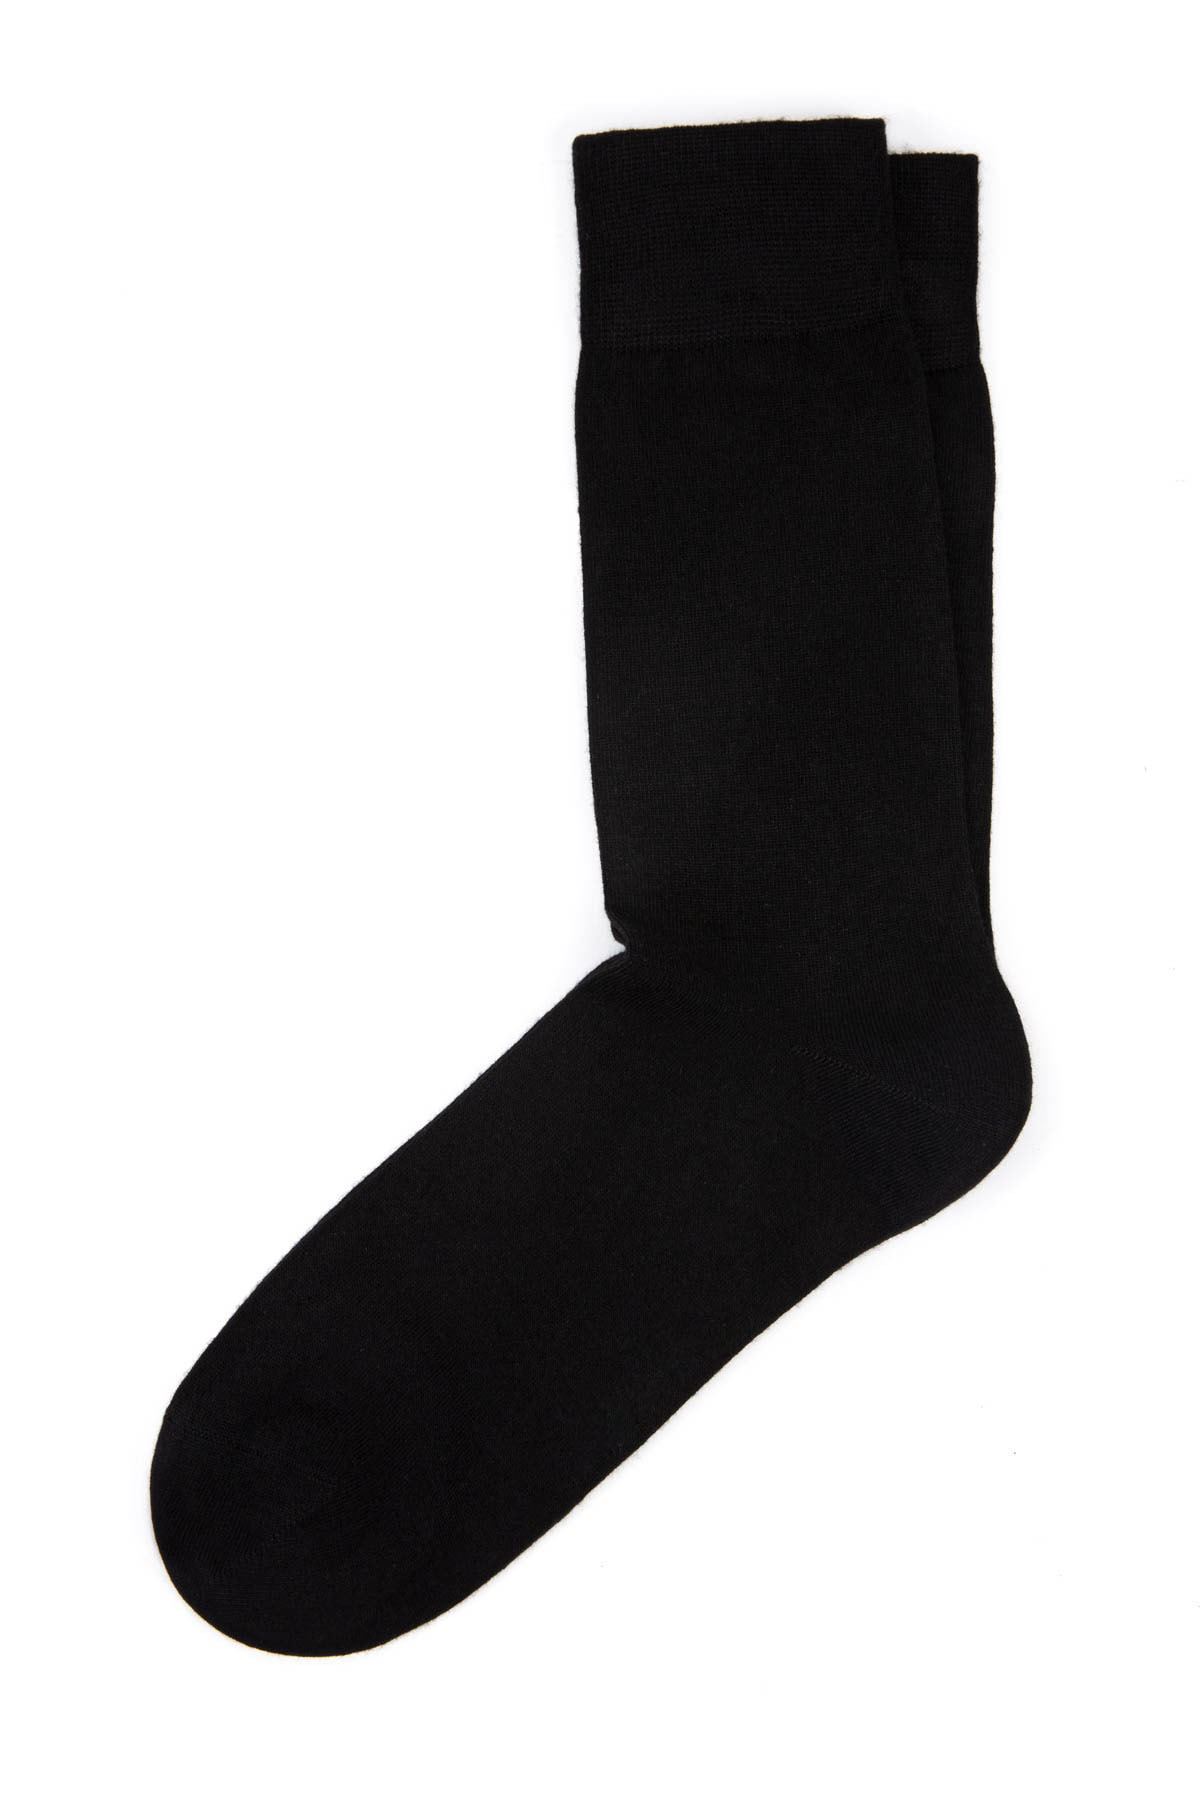  3 Adet Siyah Erkek Uzun Çorap (40-44)